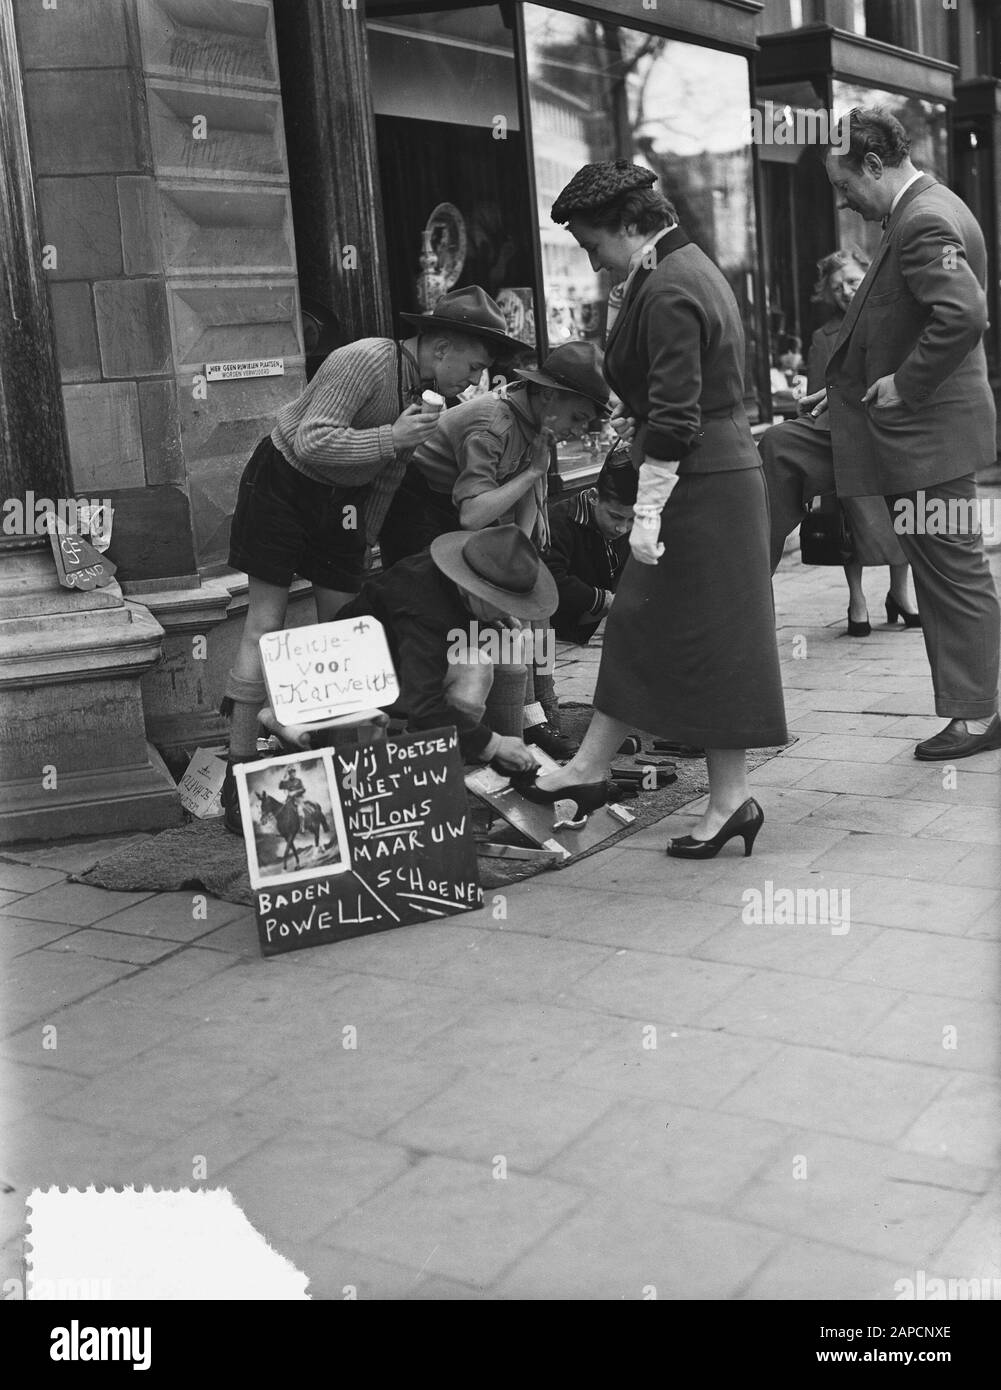 Shoeshine Black and White Stock Photos & Images - Alamy